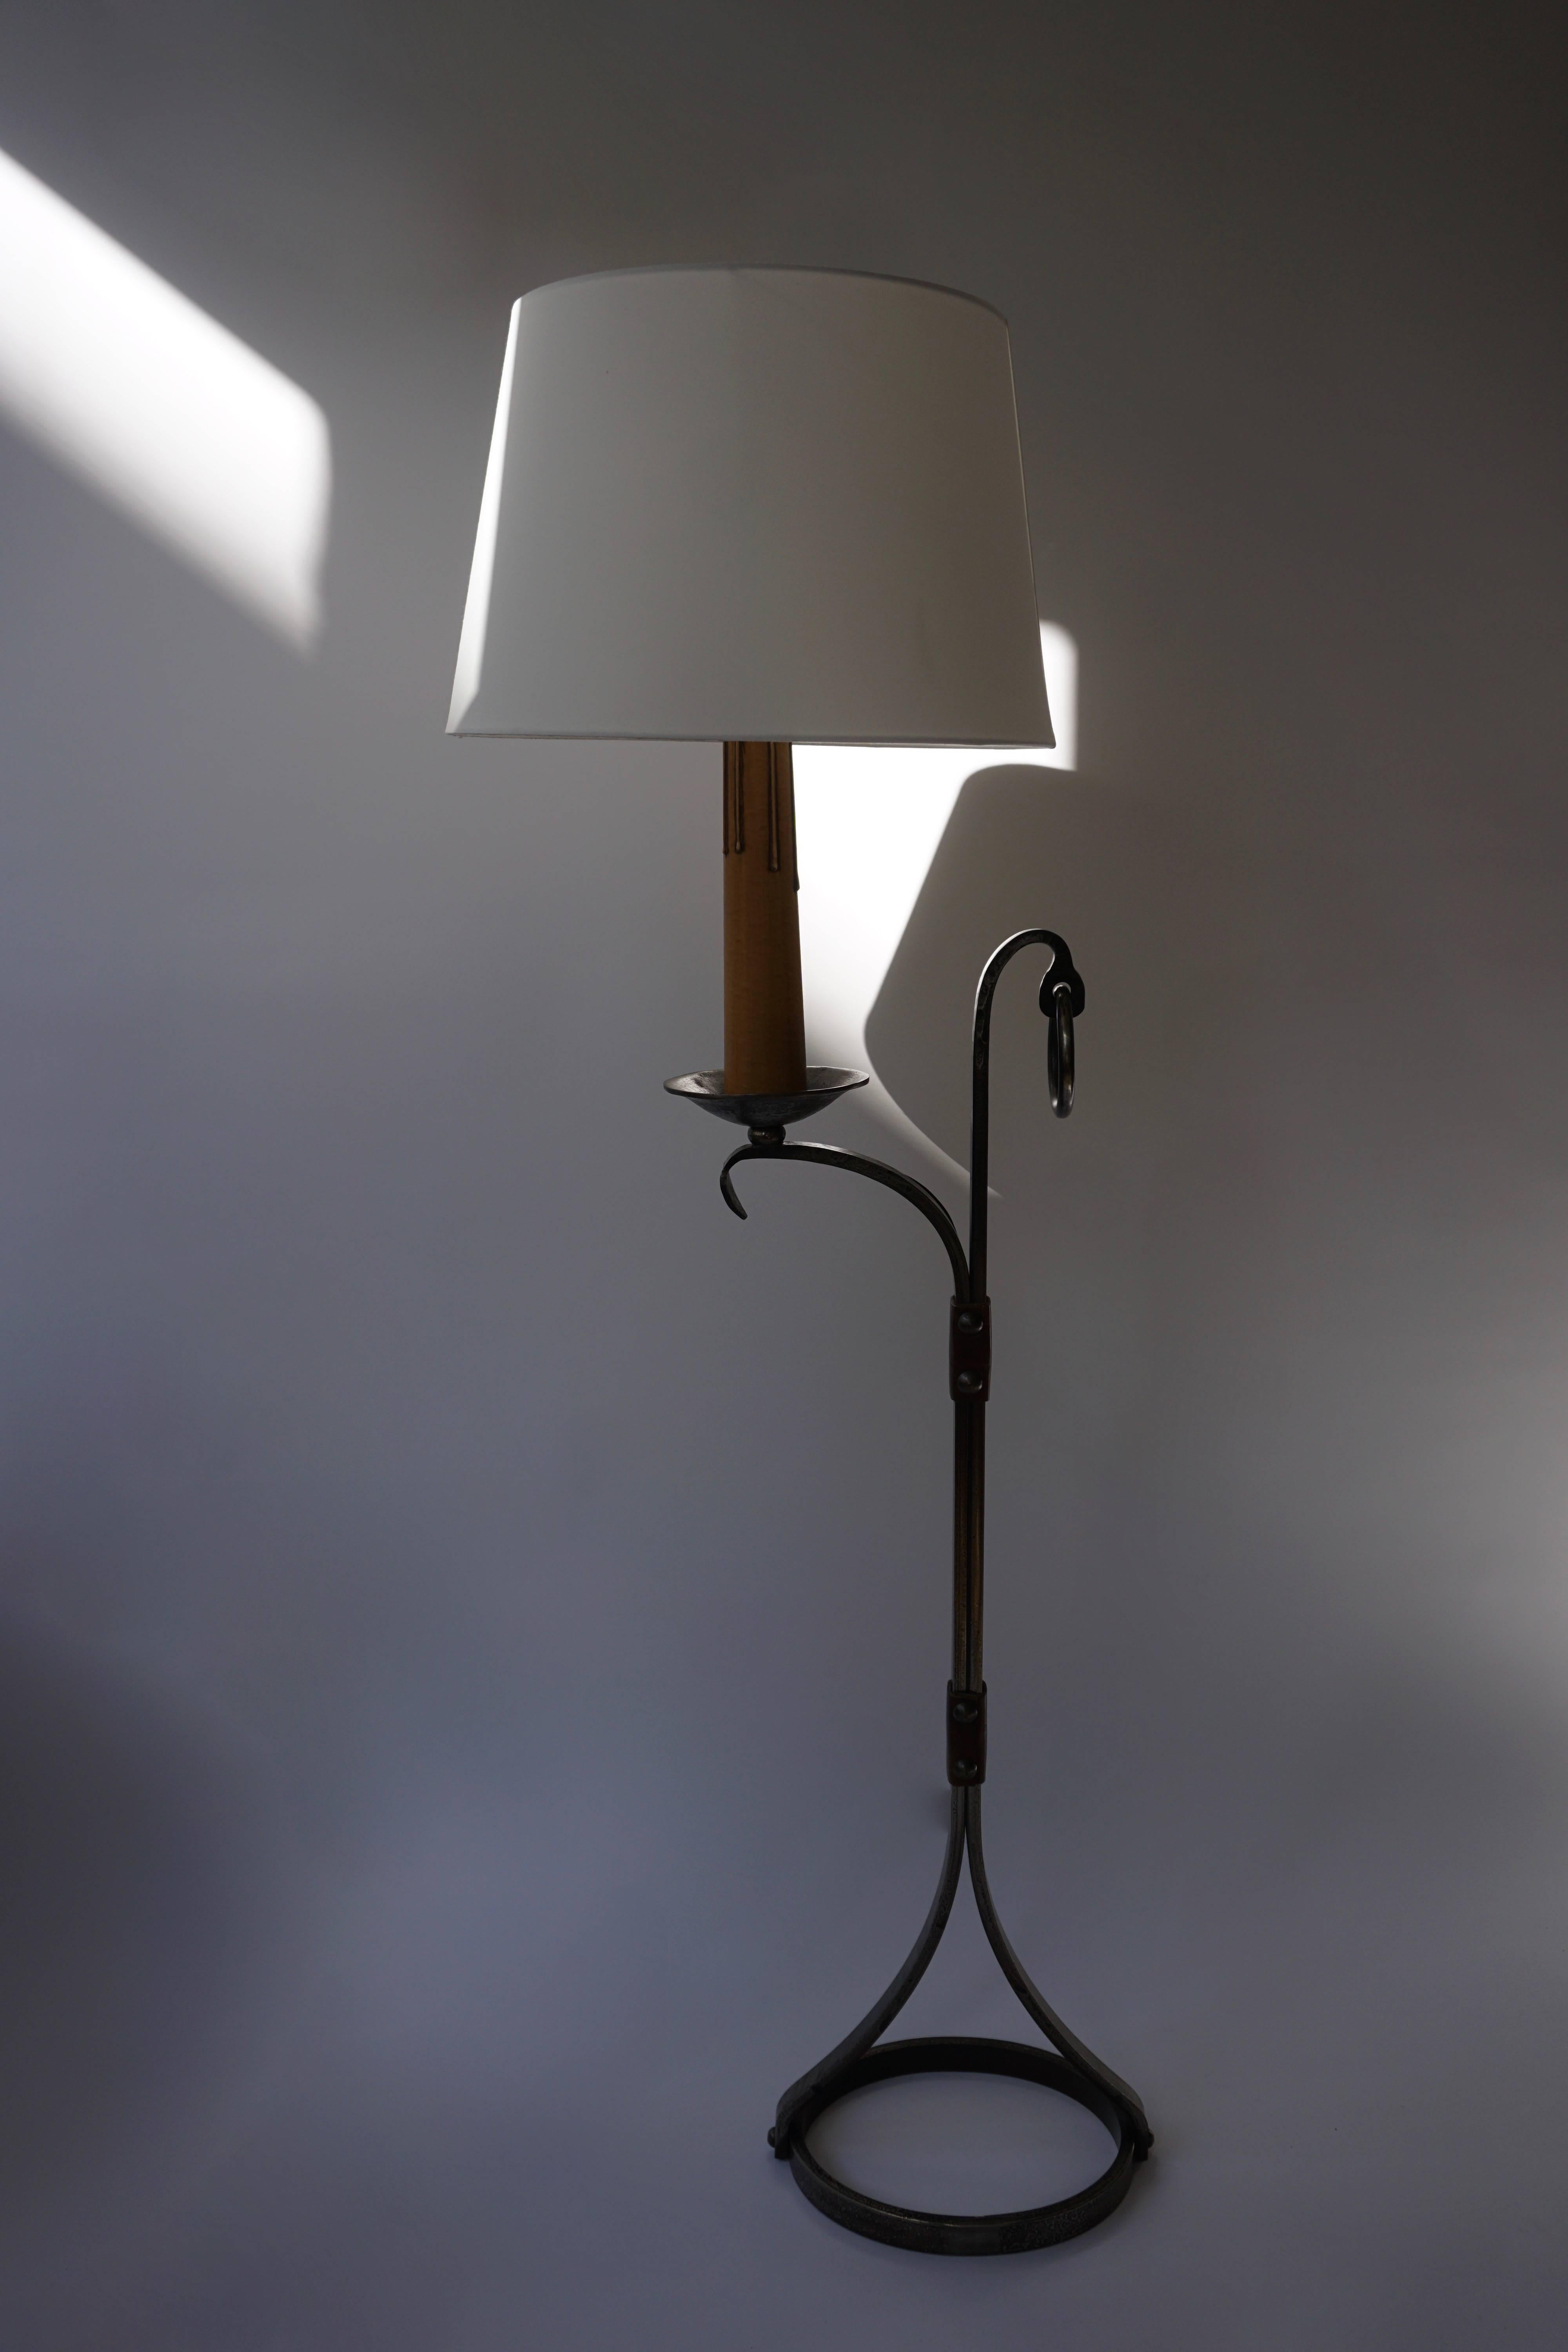 Jacques Adnet Style Stehlampe aus Eisen und Leder, 1950er-1960er Jahre, Frankreich.

Schöne Patina auf dem Eisen und Leder. Die Lampe ist sehr schwer. 

Höhe ohne Schirm: 130 cm.
Breite: 34 cm.
Tiefe: 24 cm.
Höhe mit Schirm: 150 cm.
Durchmesser: 45